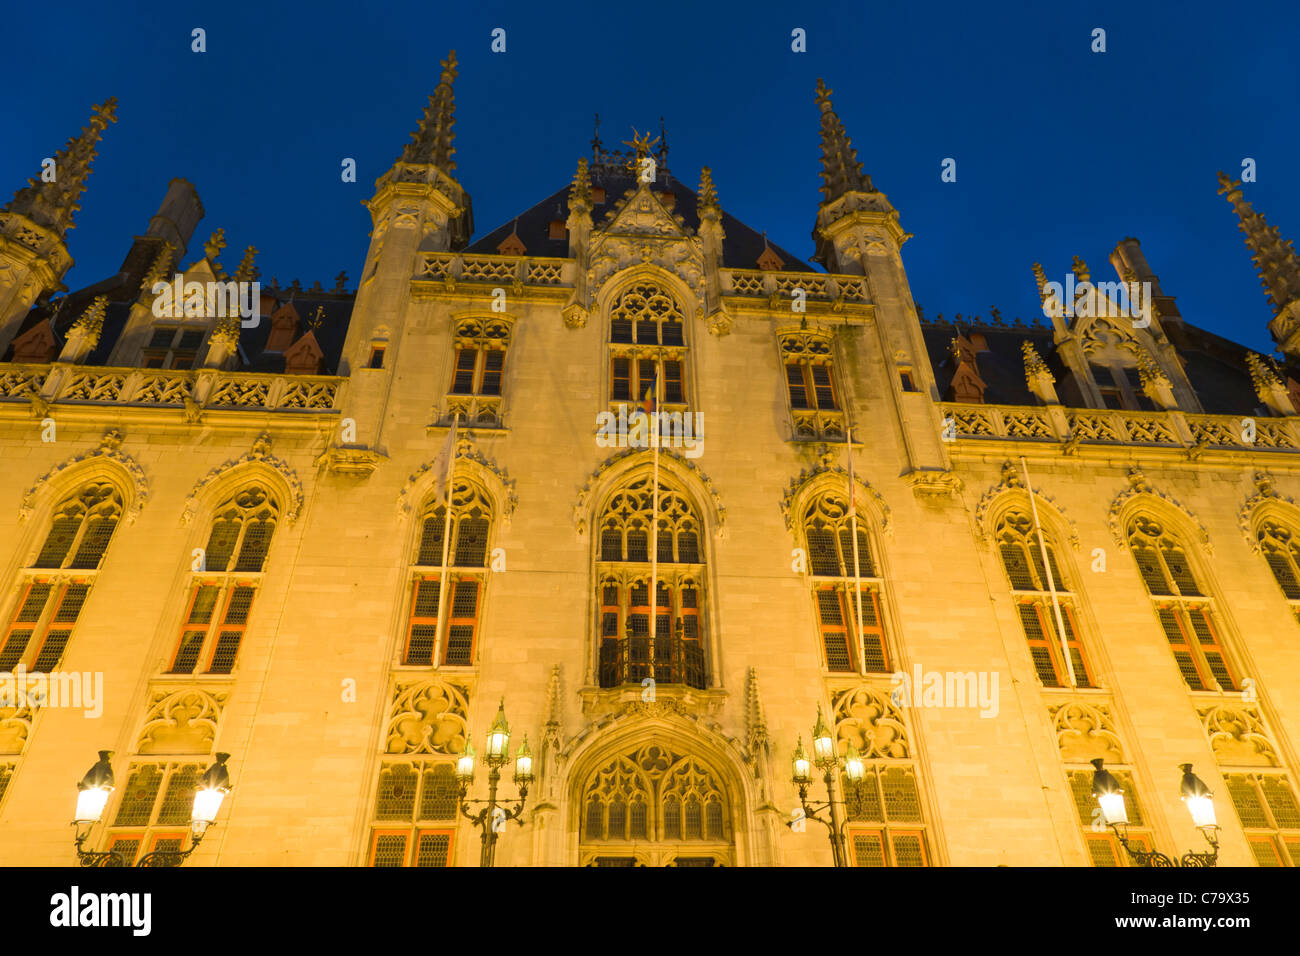 Provinciaal Hof, Corte Provinciale, Markt, la piazza del mercato di Bruges, Brugge, Fiandre Occidentali, Regione fiamminga, Belgio Foto Stock